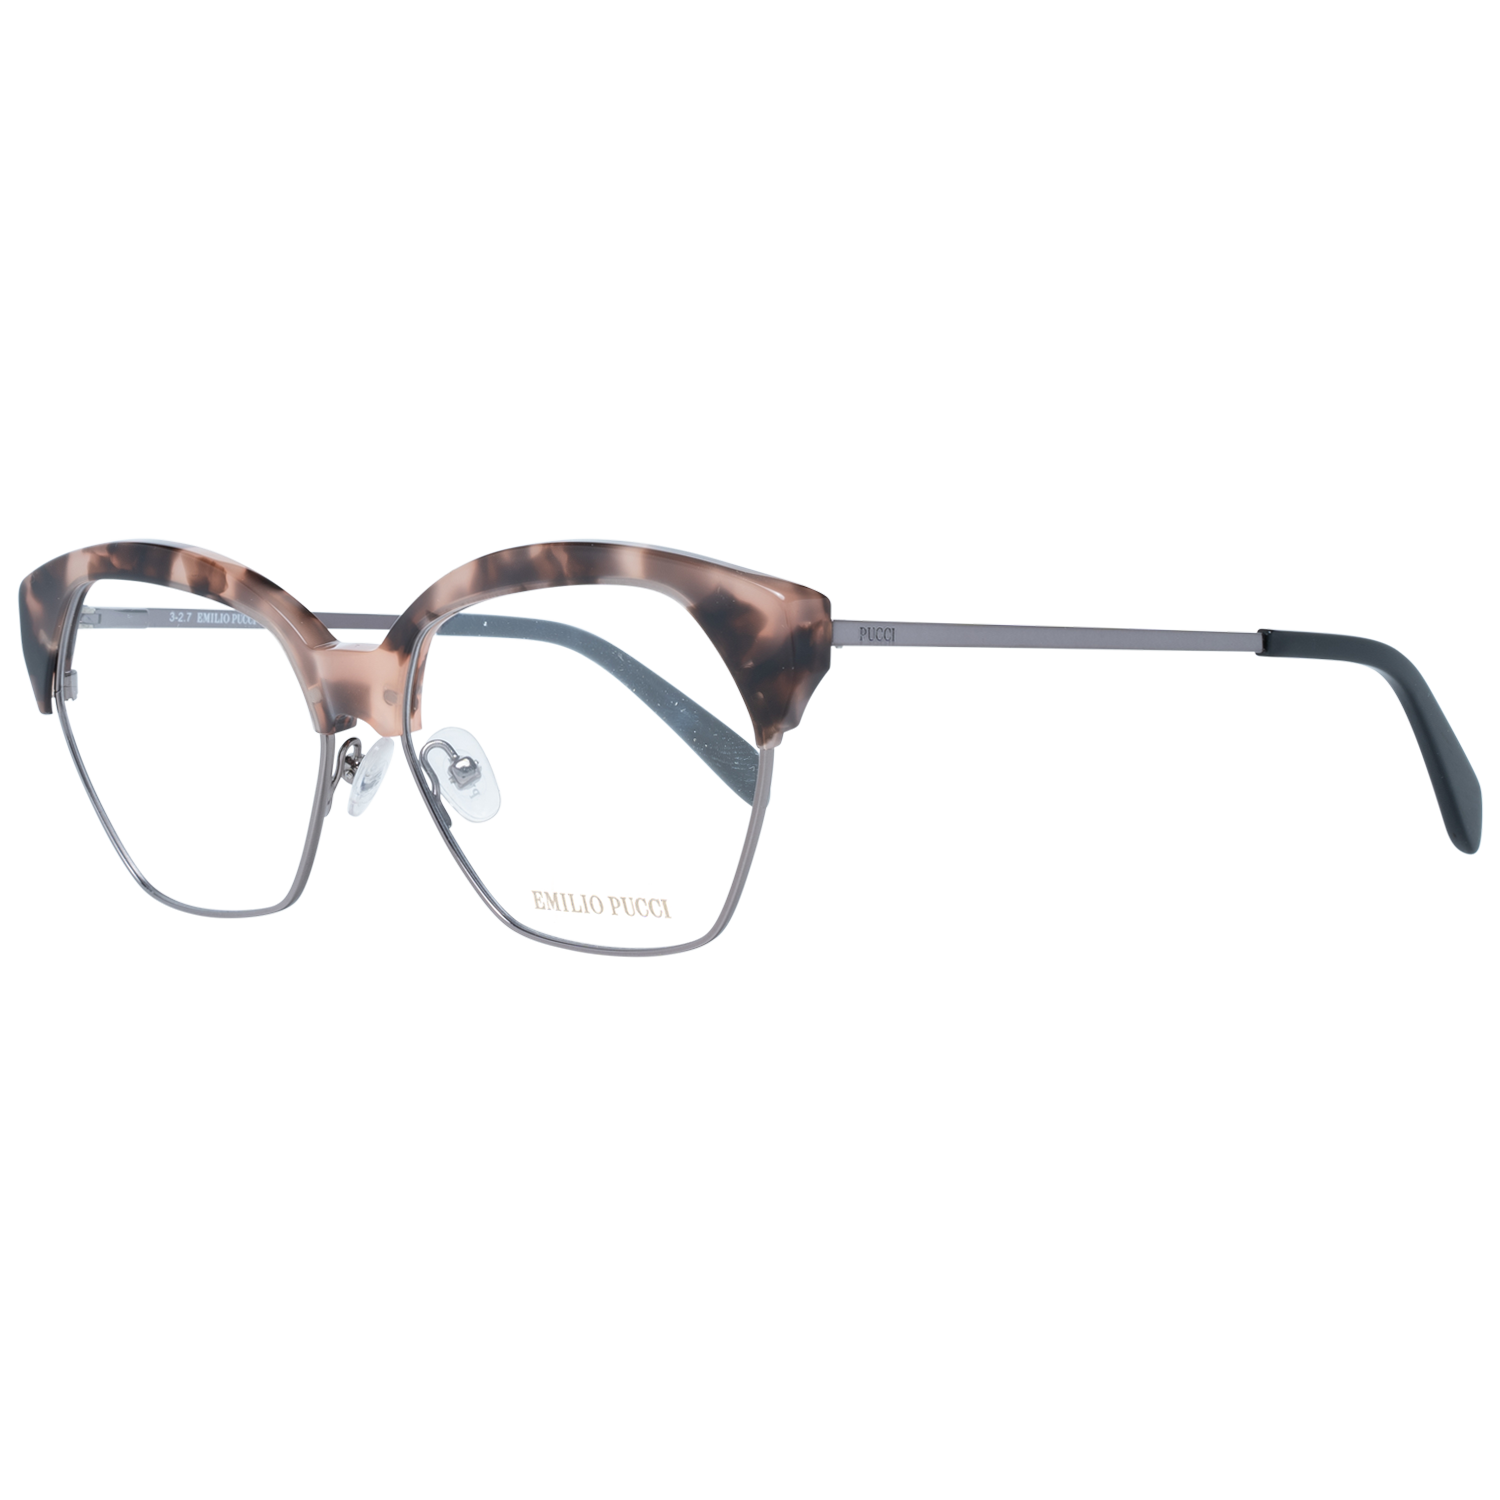 Emilio Pucci Frames Emilio Pucci Optical Frame EP5070 055 56 Eyeglasses Eyewear UK USA Australia 